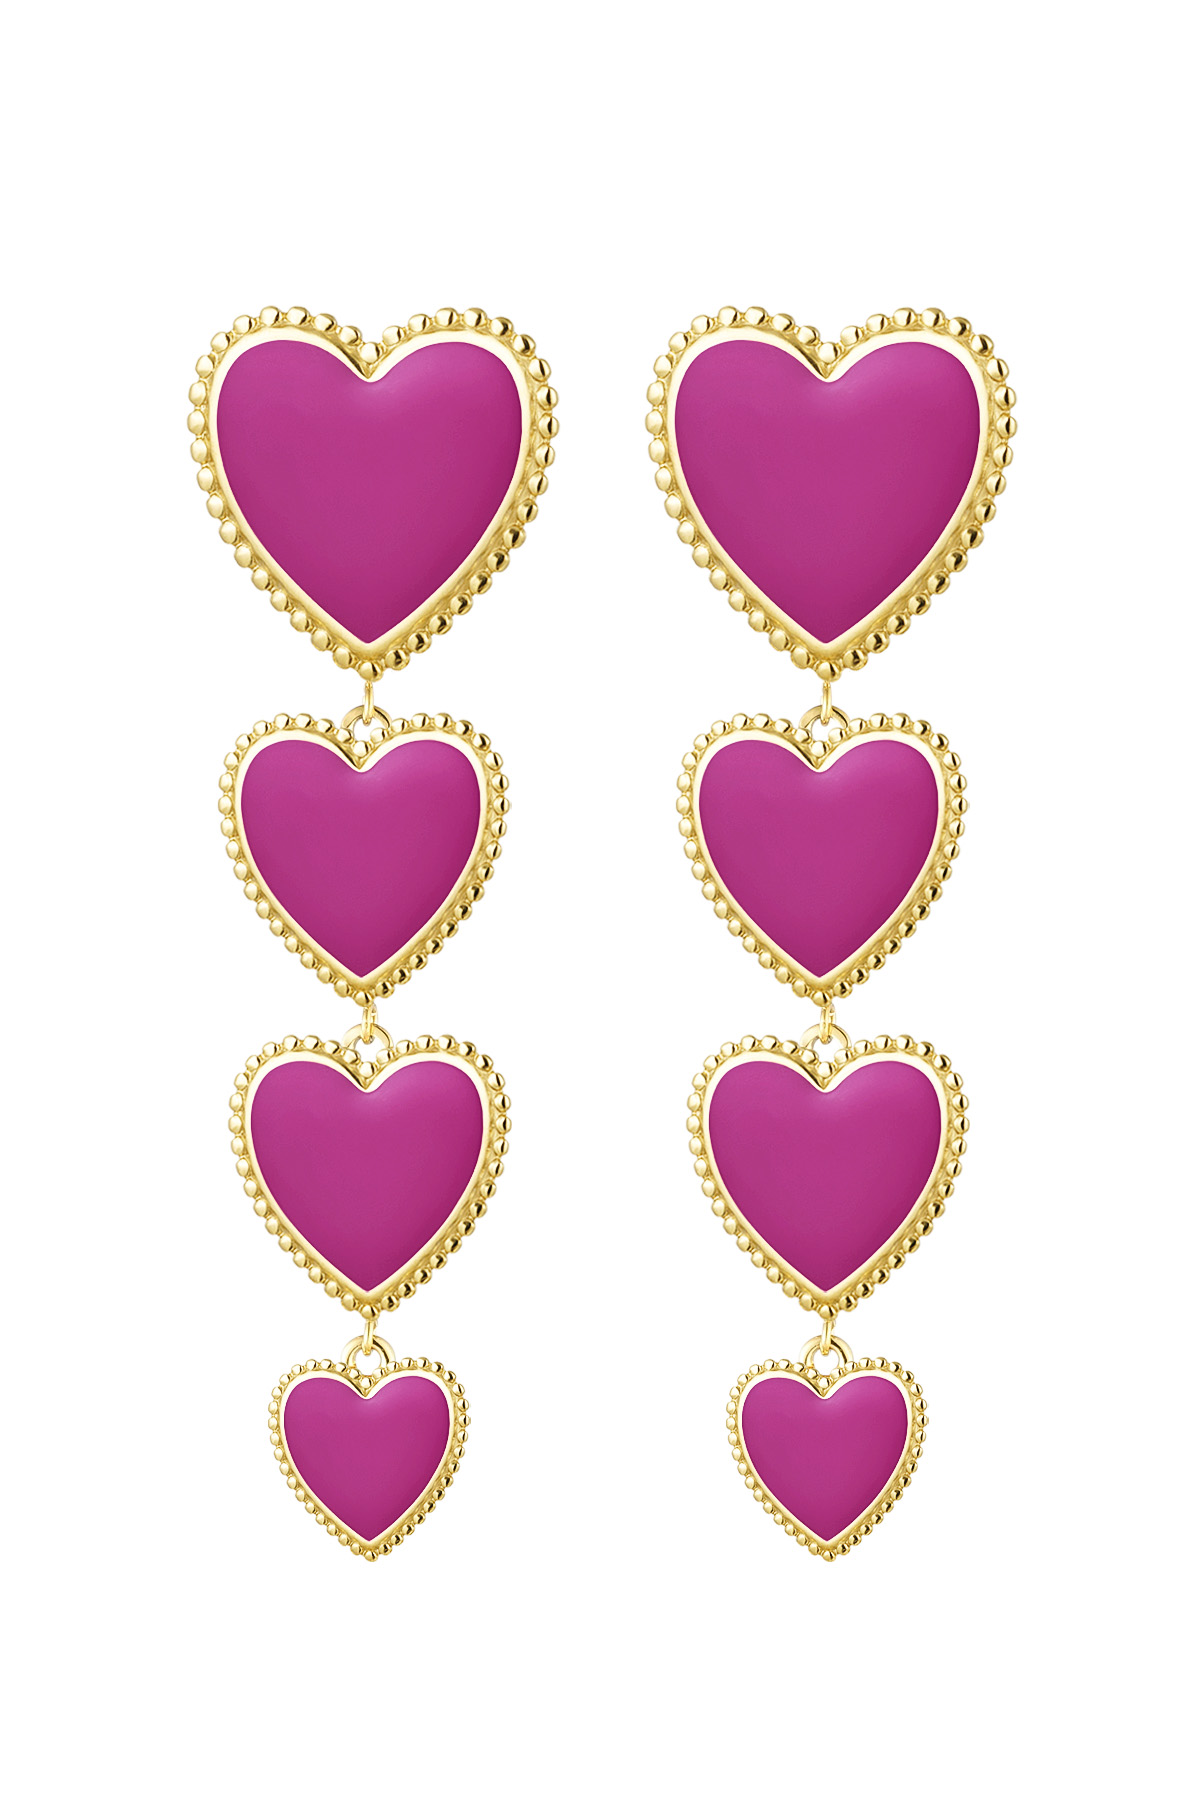 Earrings 4 hearts in a row - fuchsia 